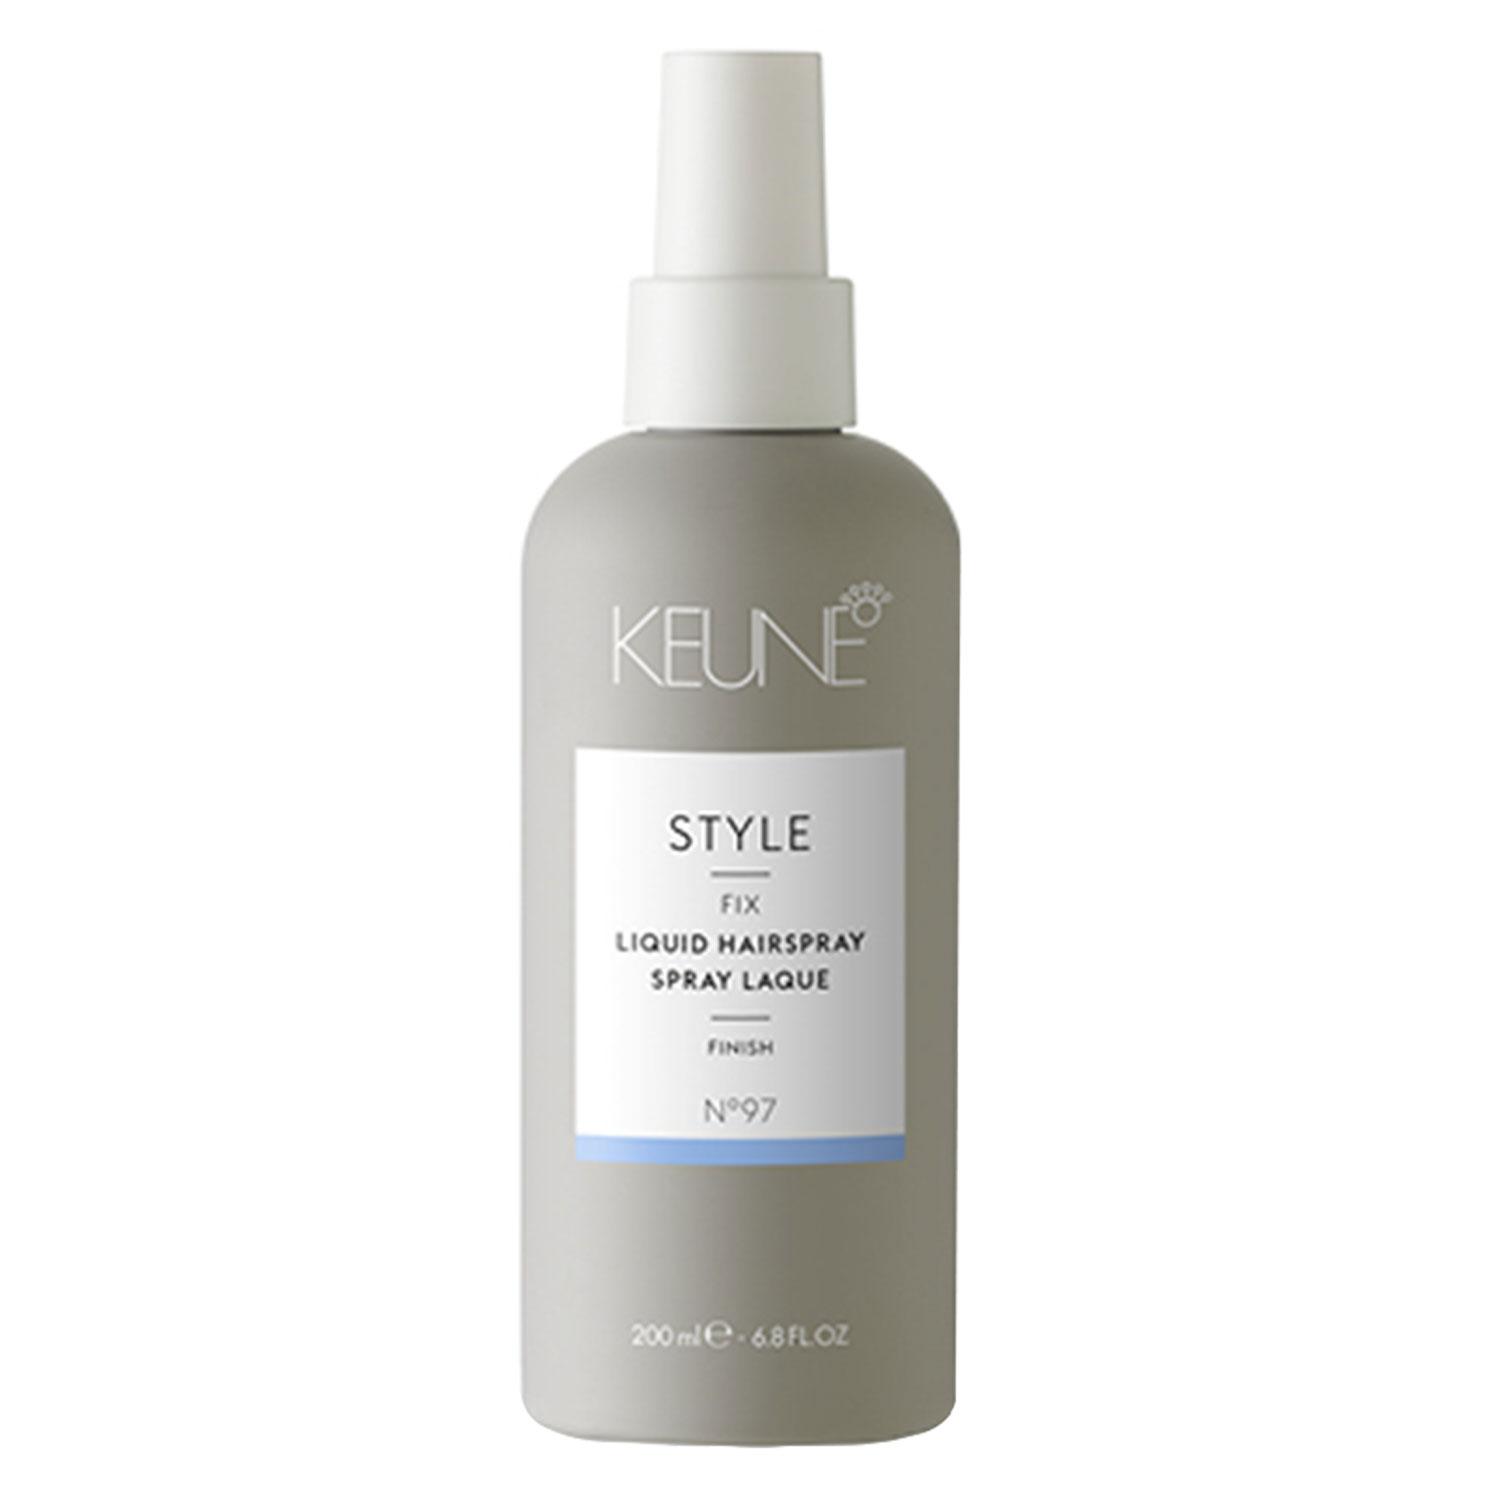 Keune Style - Liquid Hairspray